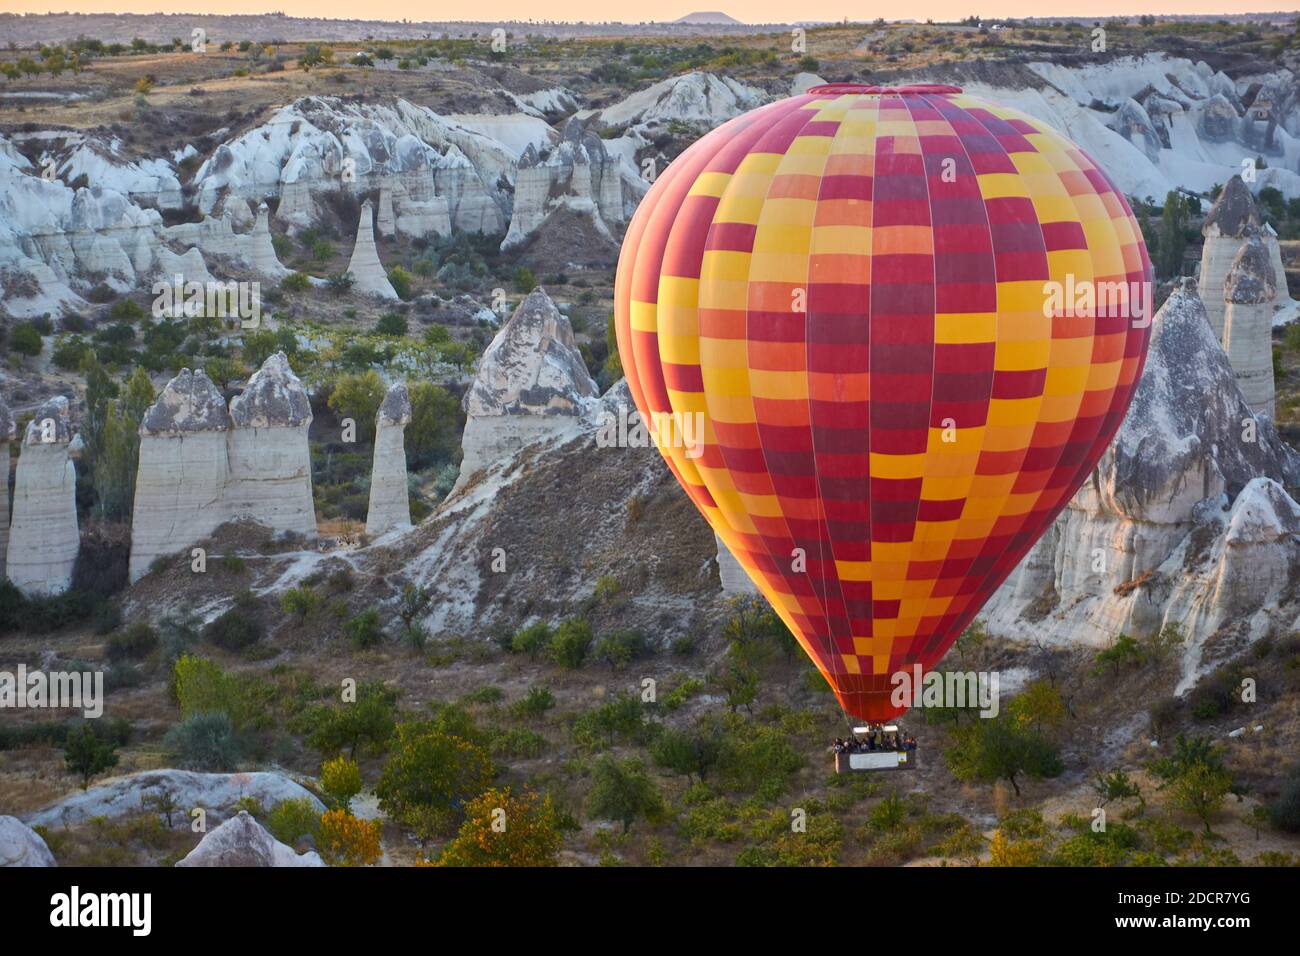 Heißluftballons bei Sonnenaufgang in Kappadokien, Türkei Stockfoto